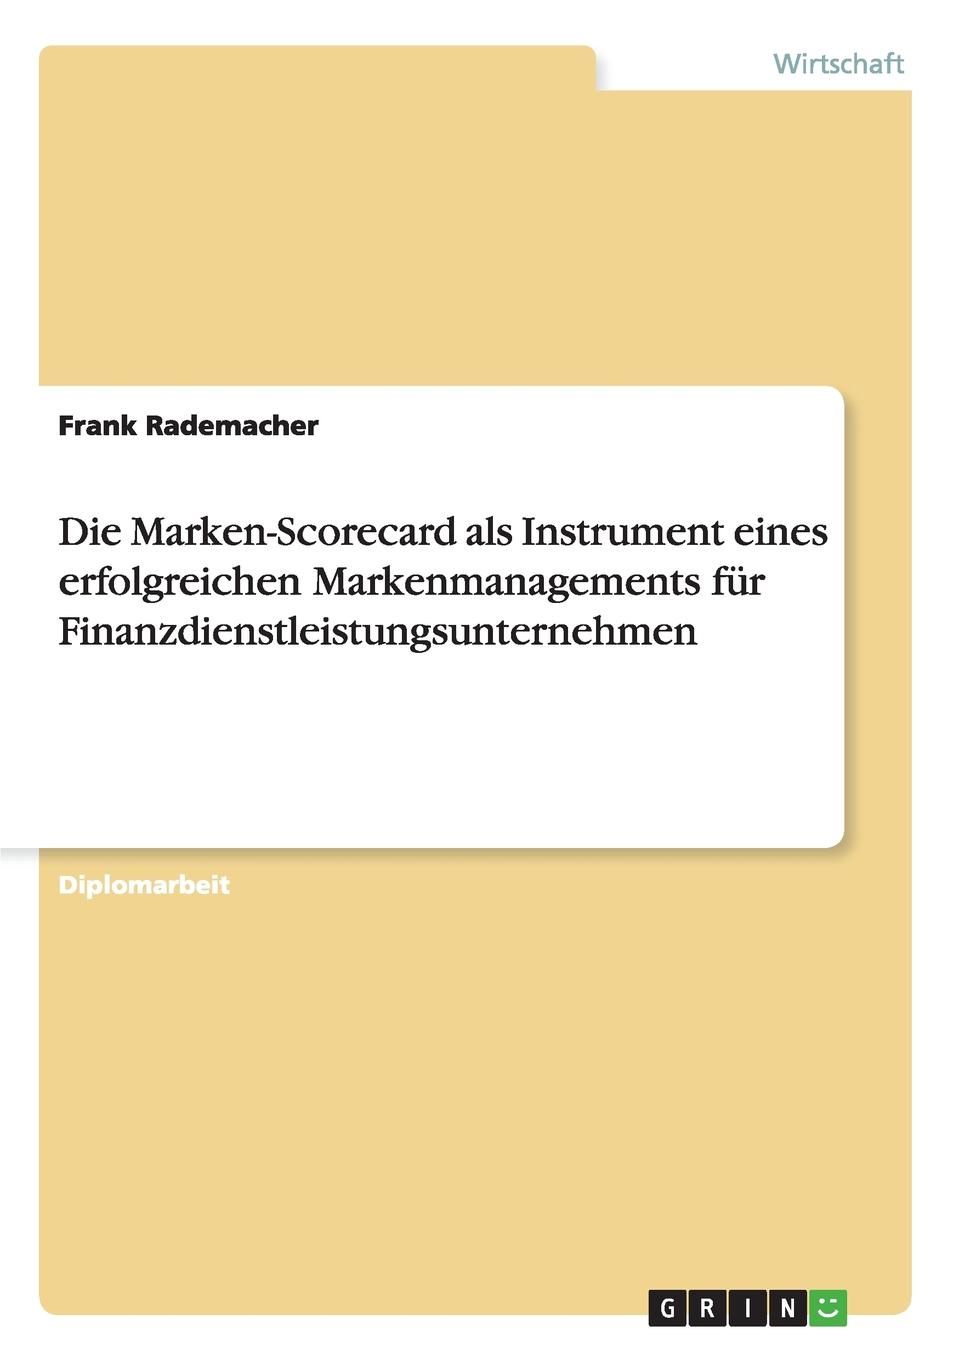 фото Die Marken-Scorecard als Instrument eines erfolgreichen Markenmanagements fur Finanzdienstleistungsunternehmen